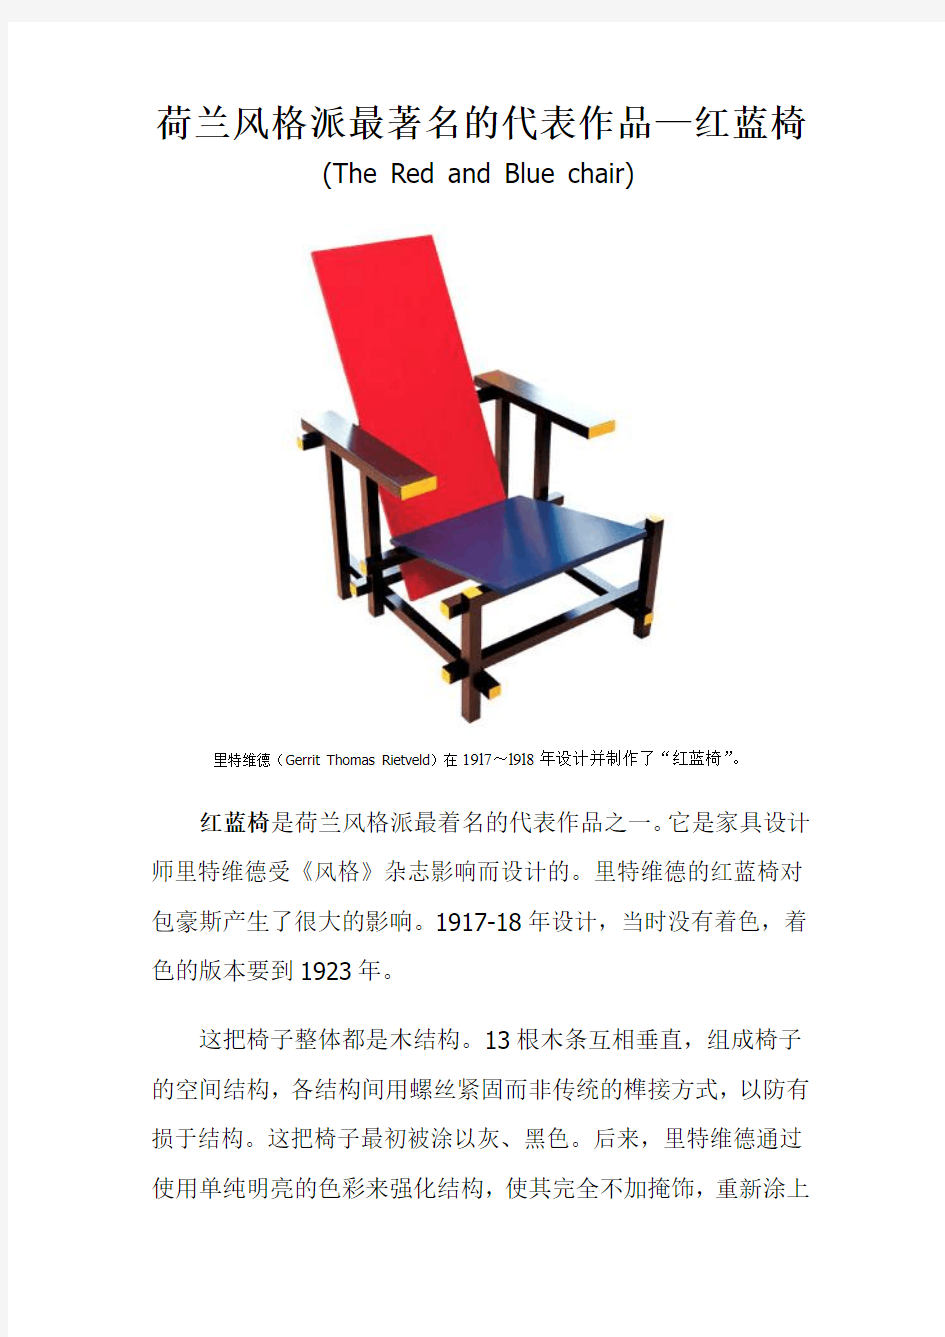 荷兰风格派最著名的代表作品---红蓝椅